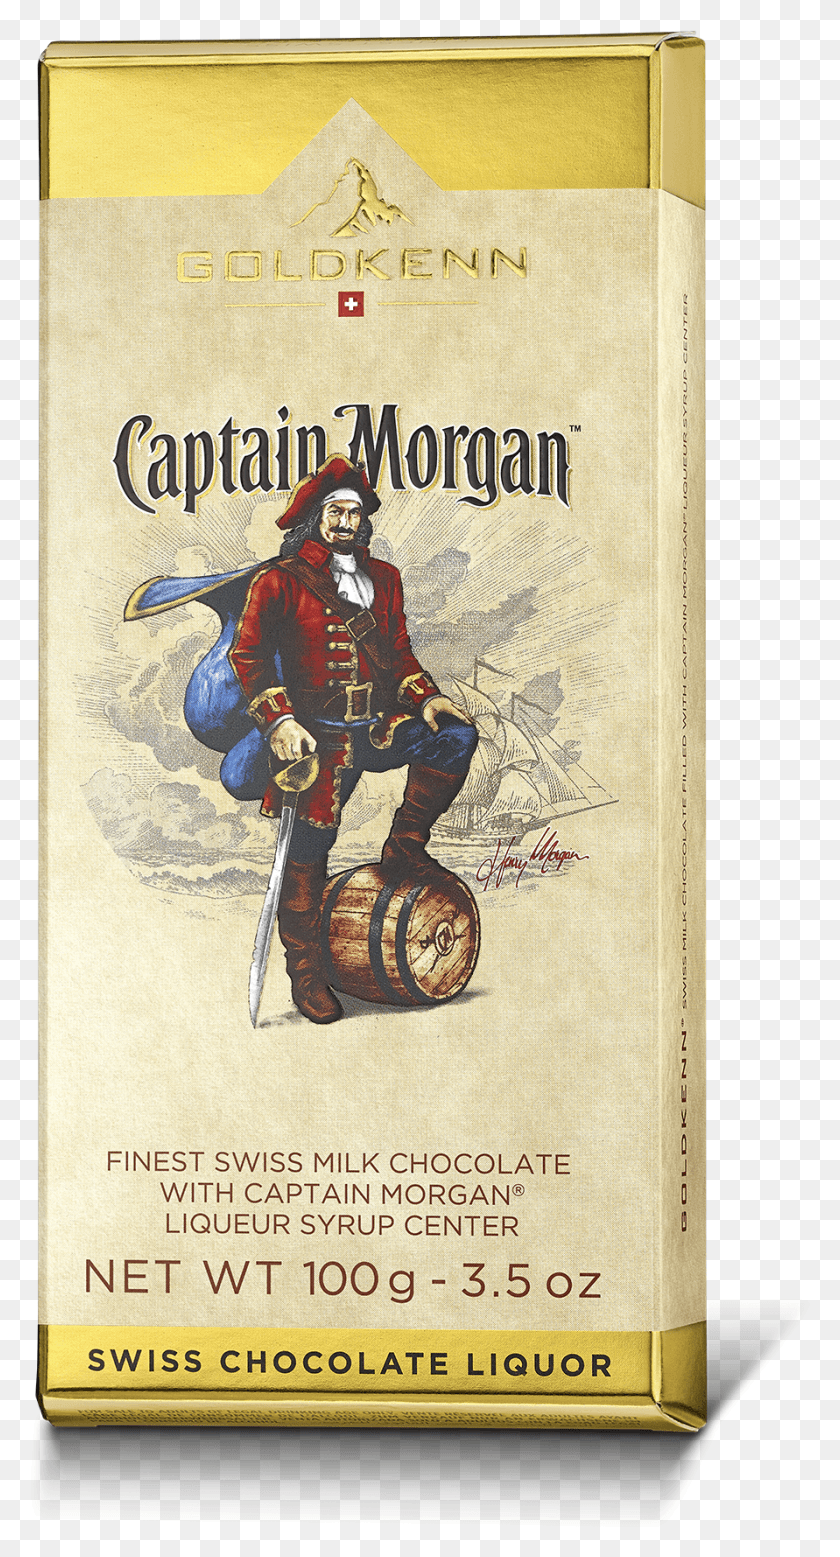 891x1711 Капитан Морган, Человек, Человек, Пират, Капитан Морган Hd Png Скачать